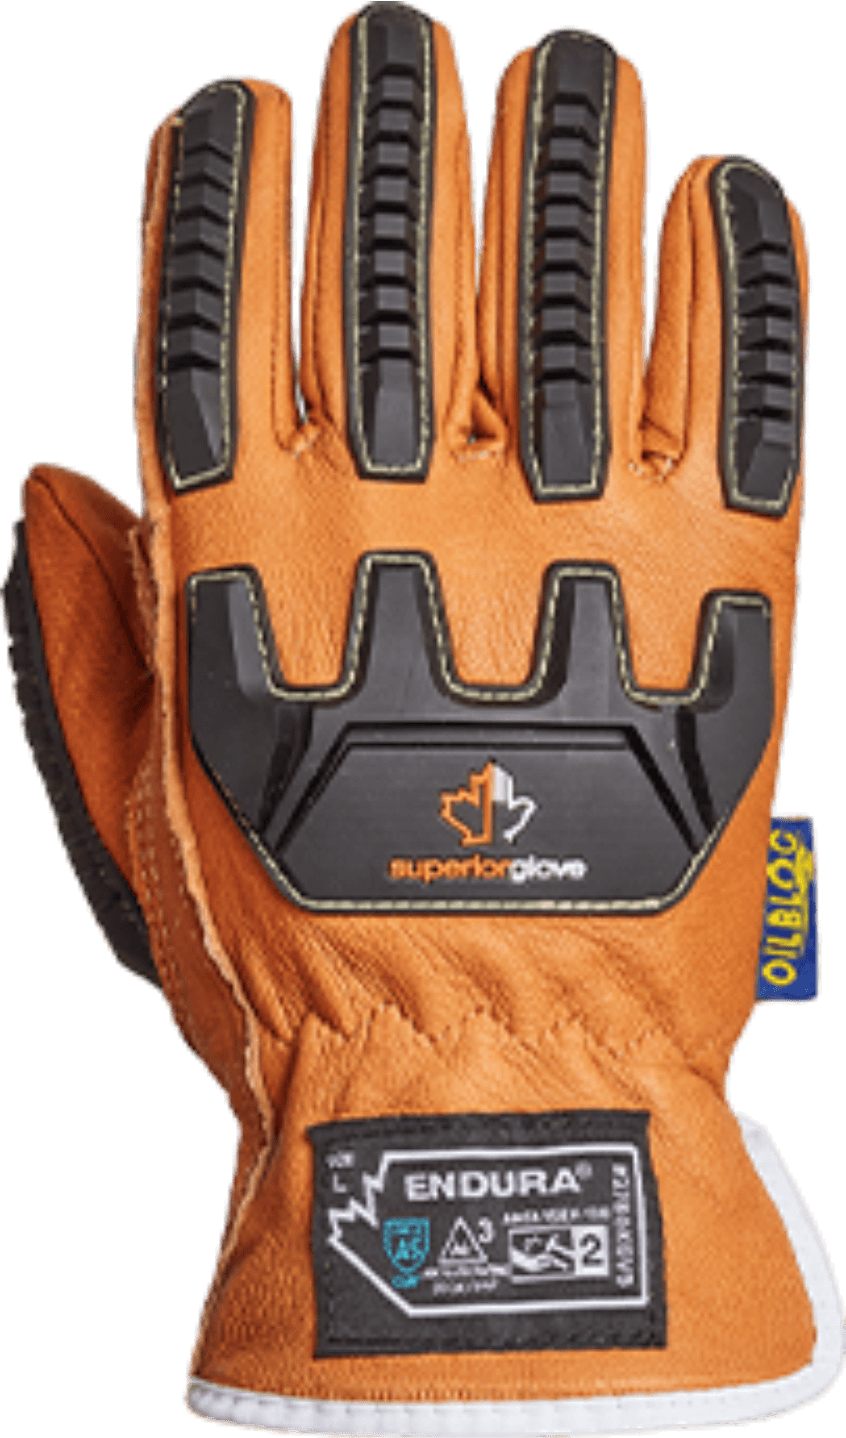 Servicio Dormido demostración Tipos de guantes de seguridad - Superior Glove